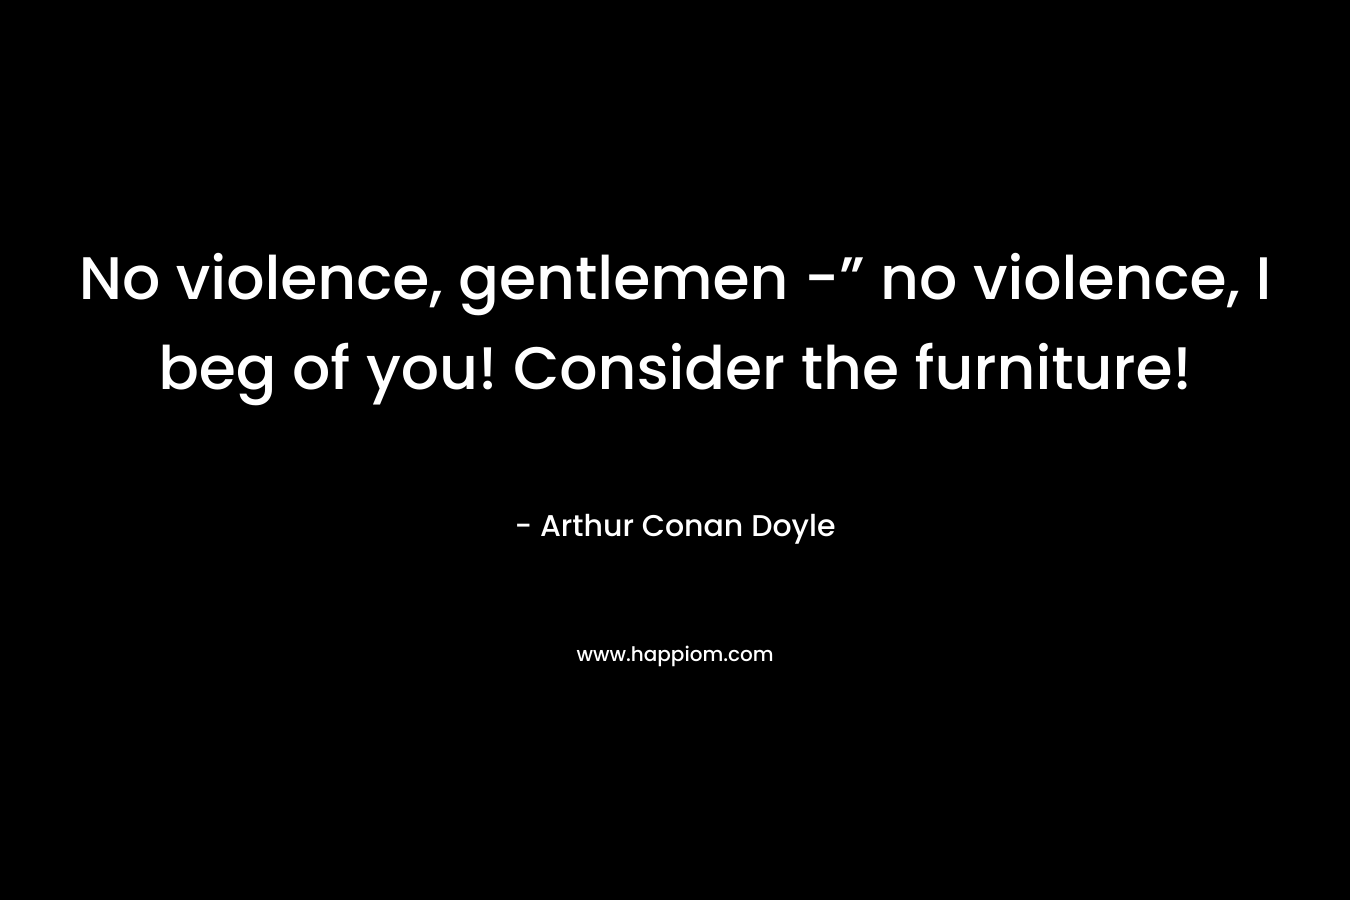 No violence, gentlemen -” no violence, I beg of you! Consider the furniture!